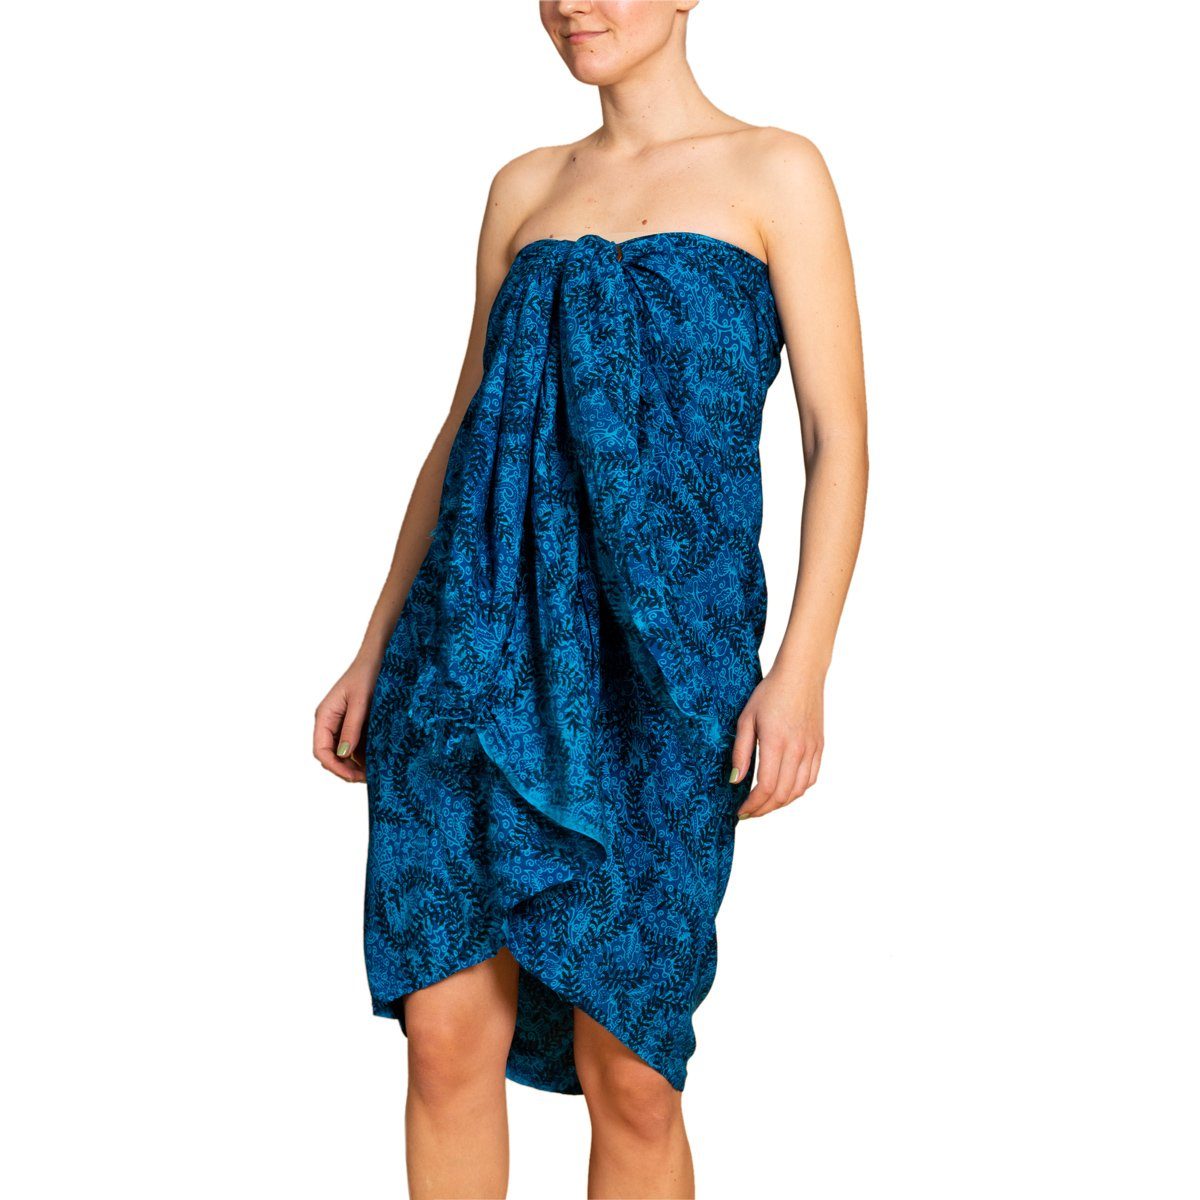 PANASIAM Pareo Sarong Wachsbatik Blautöne aus hochwertiger Viskose Strandtuch, Strandkleid Bikini Cover-up Tuch für den Strand Schultertuch Halstuch B108 blue tones